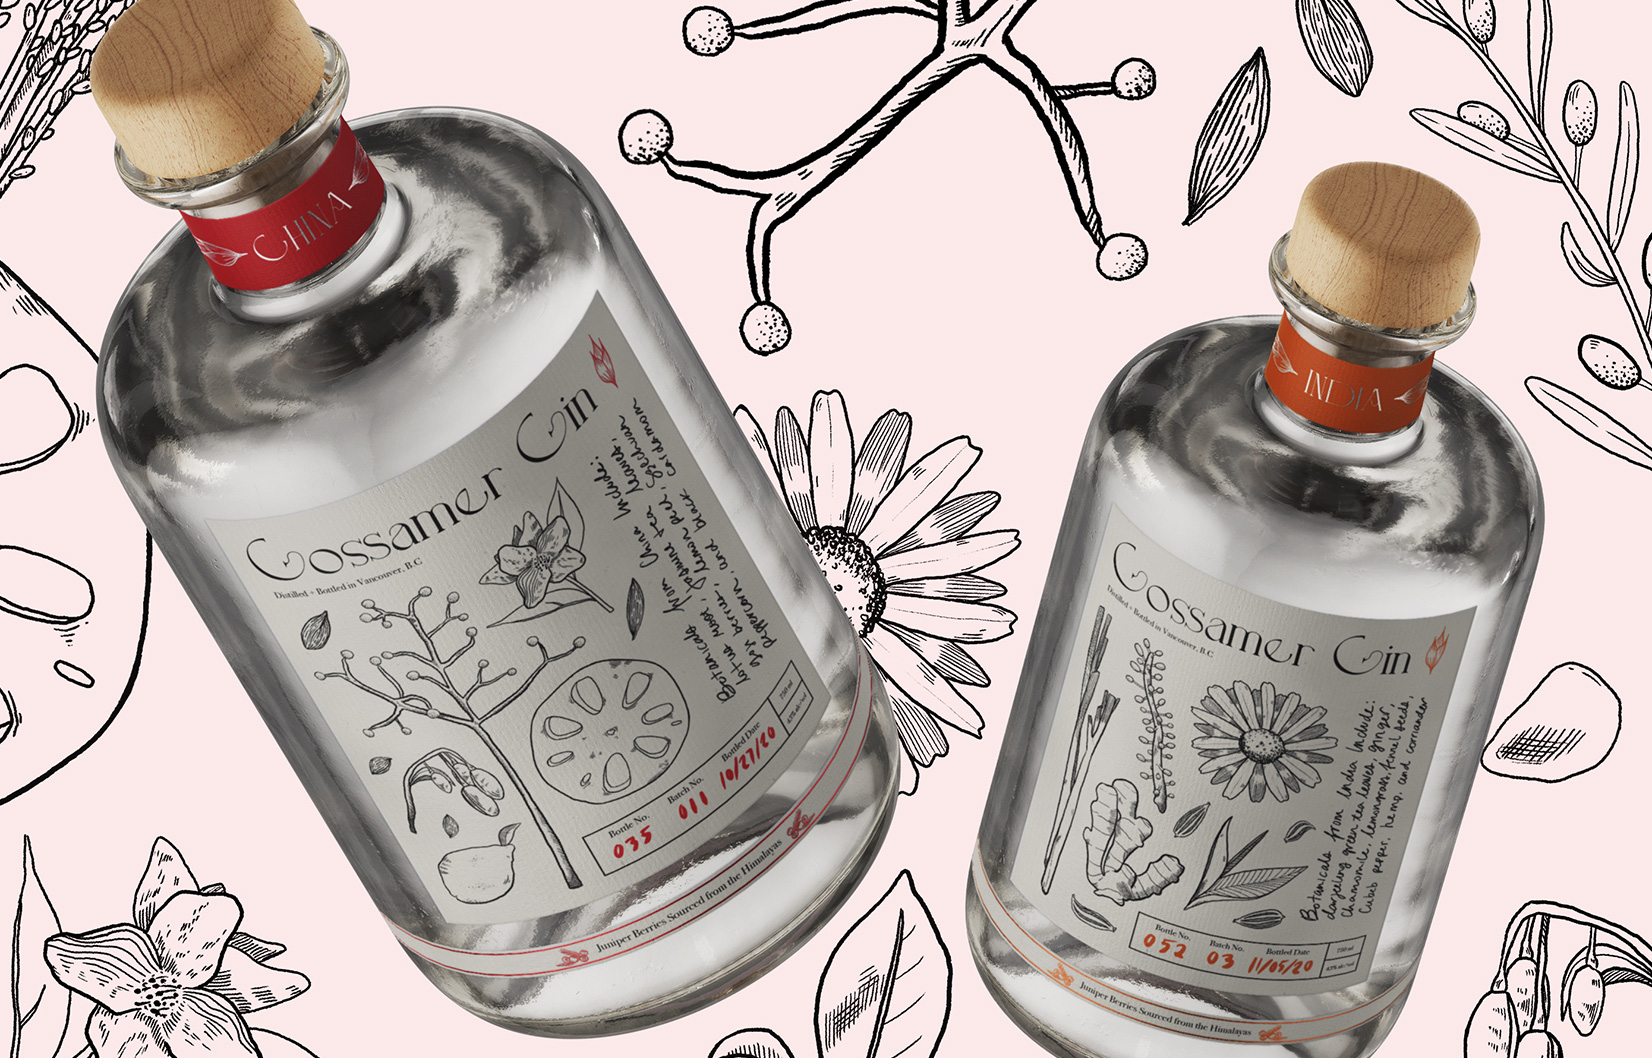 Two elegant gin bottles floating with beautiful botanical illustration on and surrounding them.